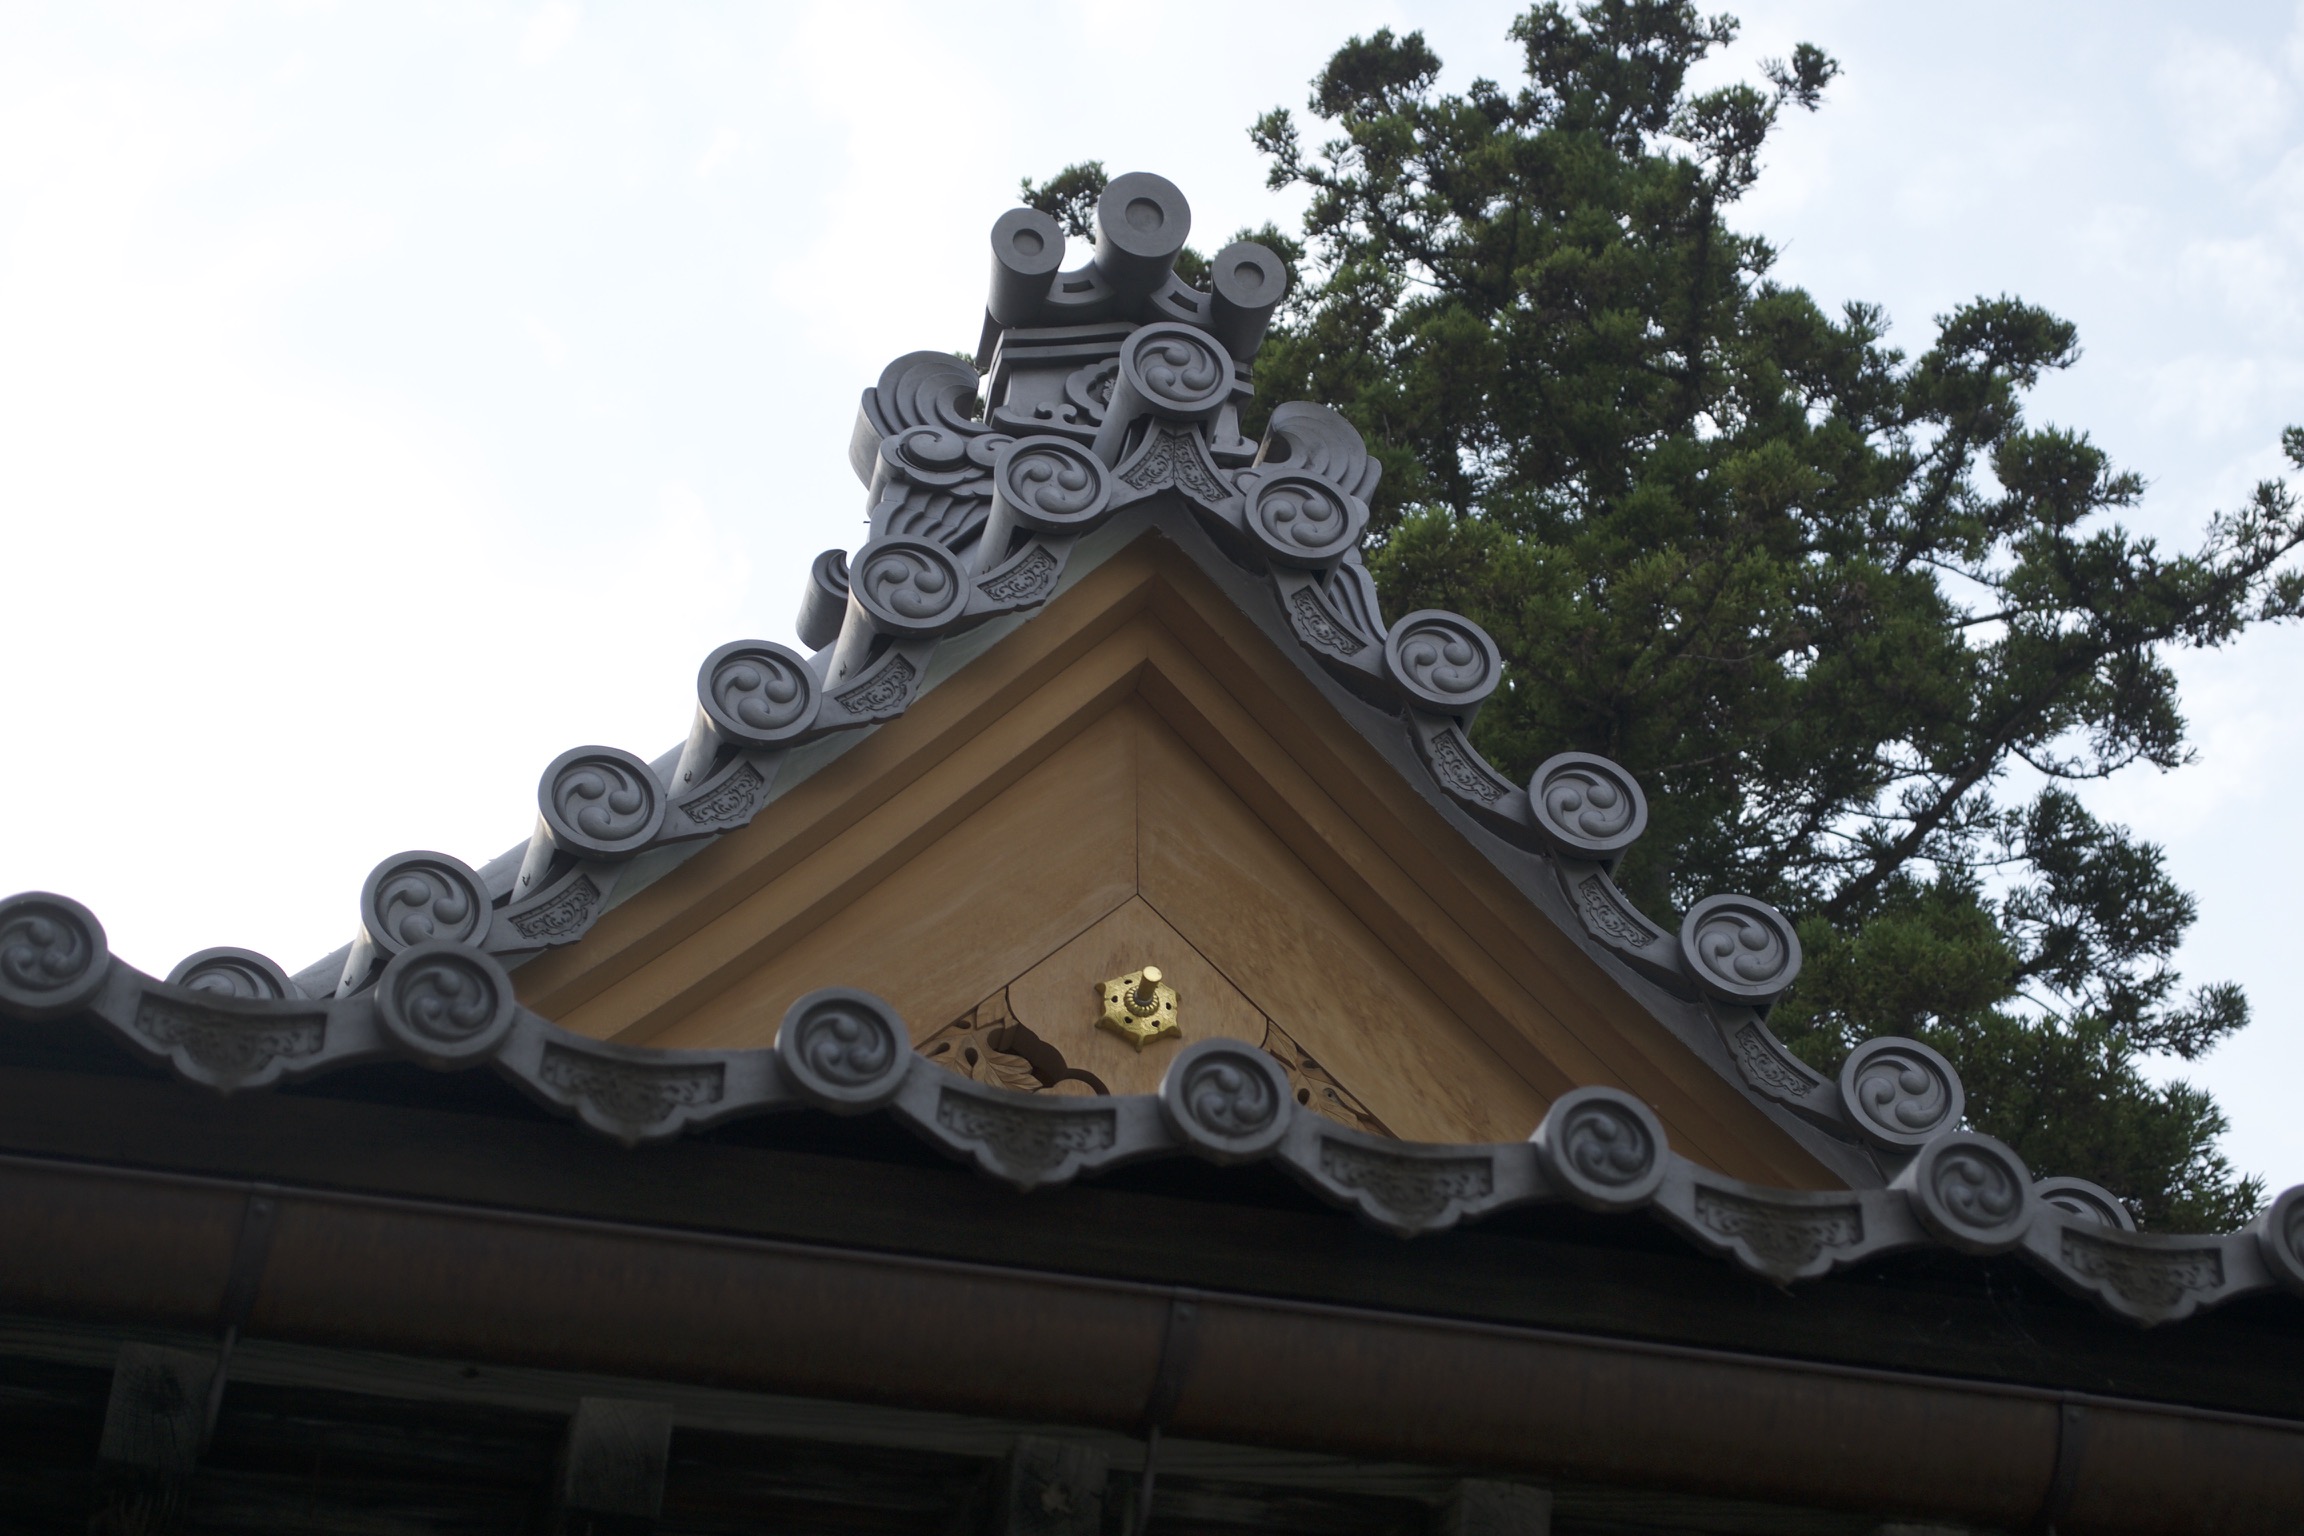 A closeup of roof ornaments.